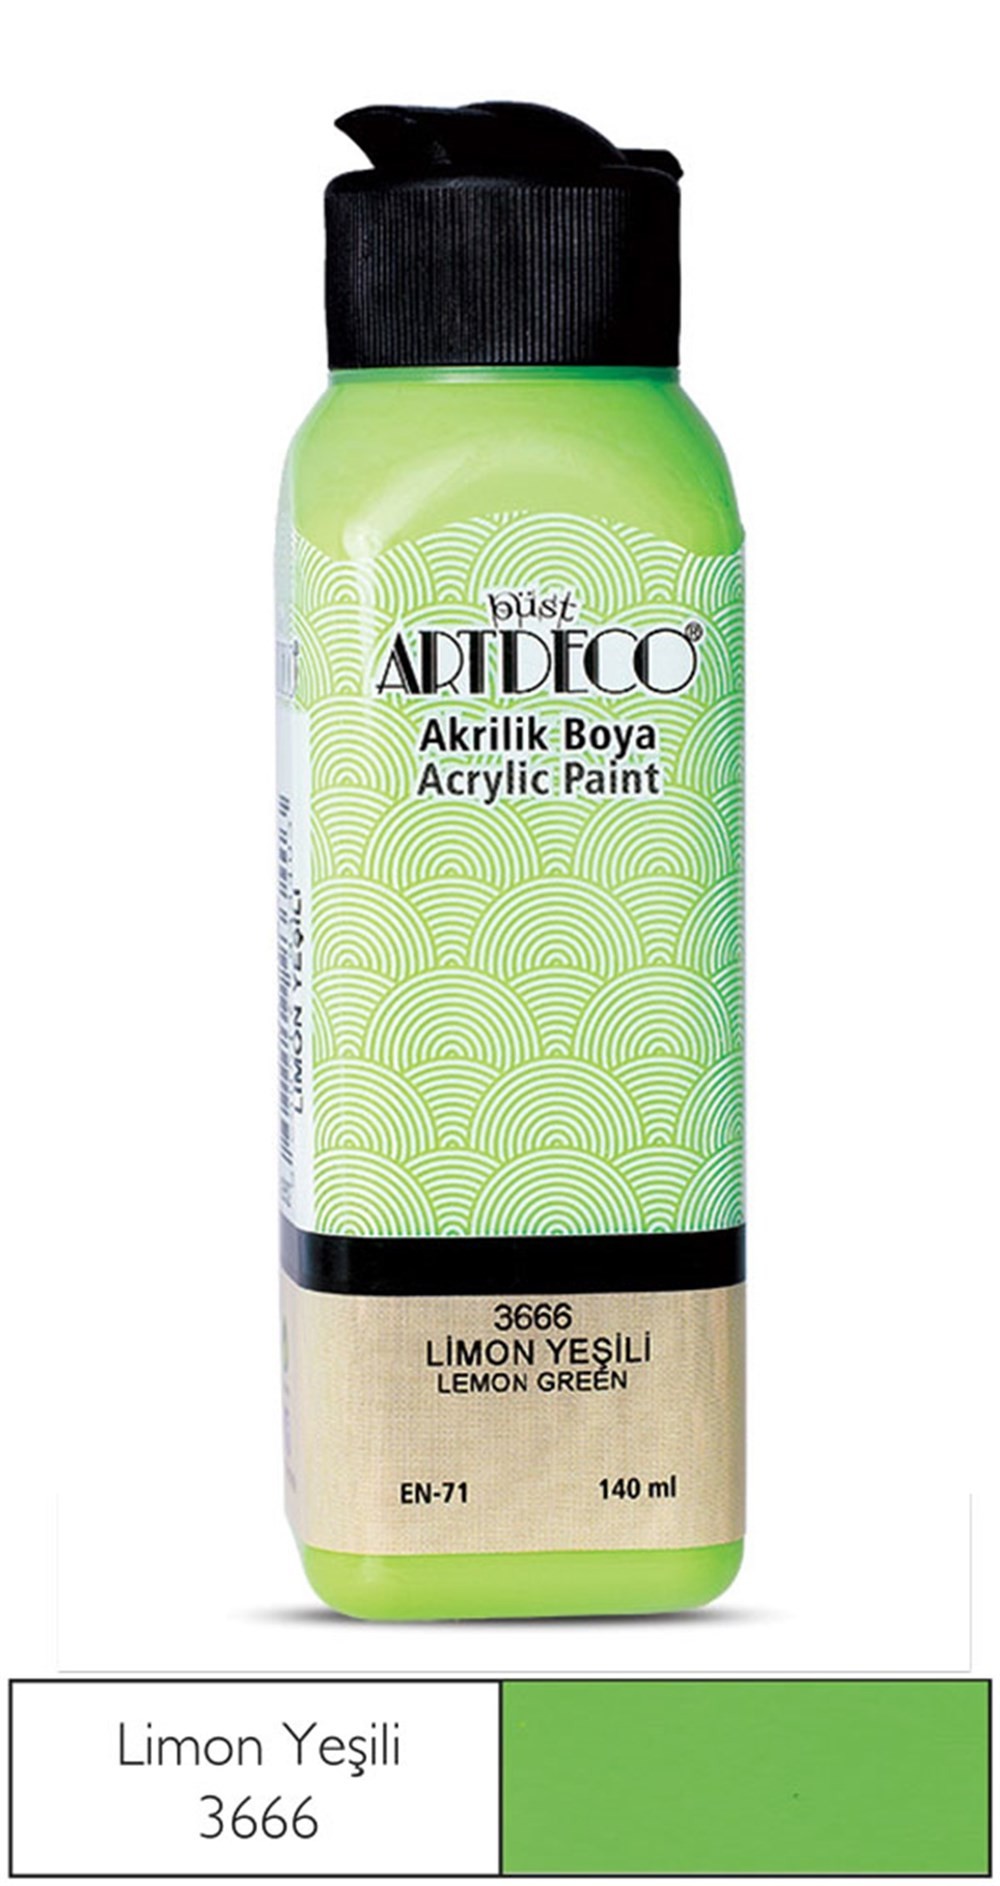 Artdeco Akrilik Boya 140 ml 3666 Limon Yeşili